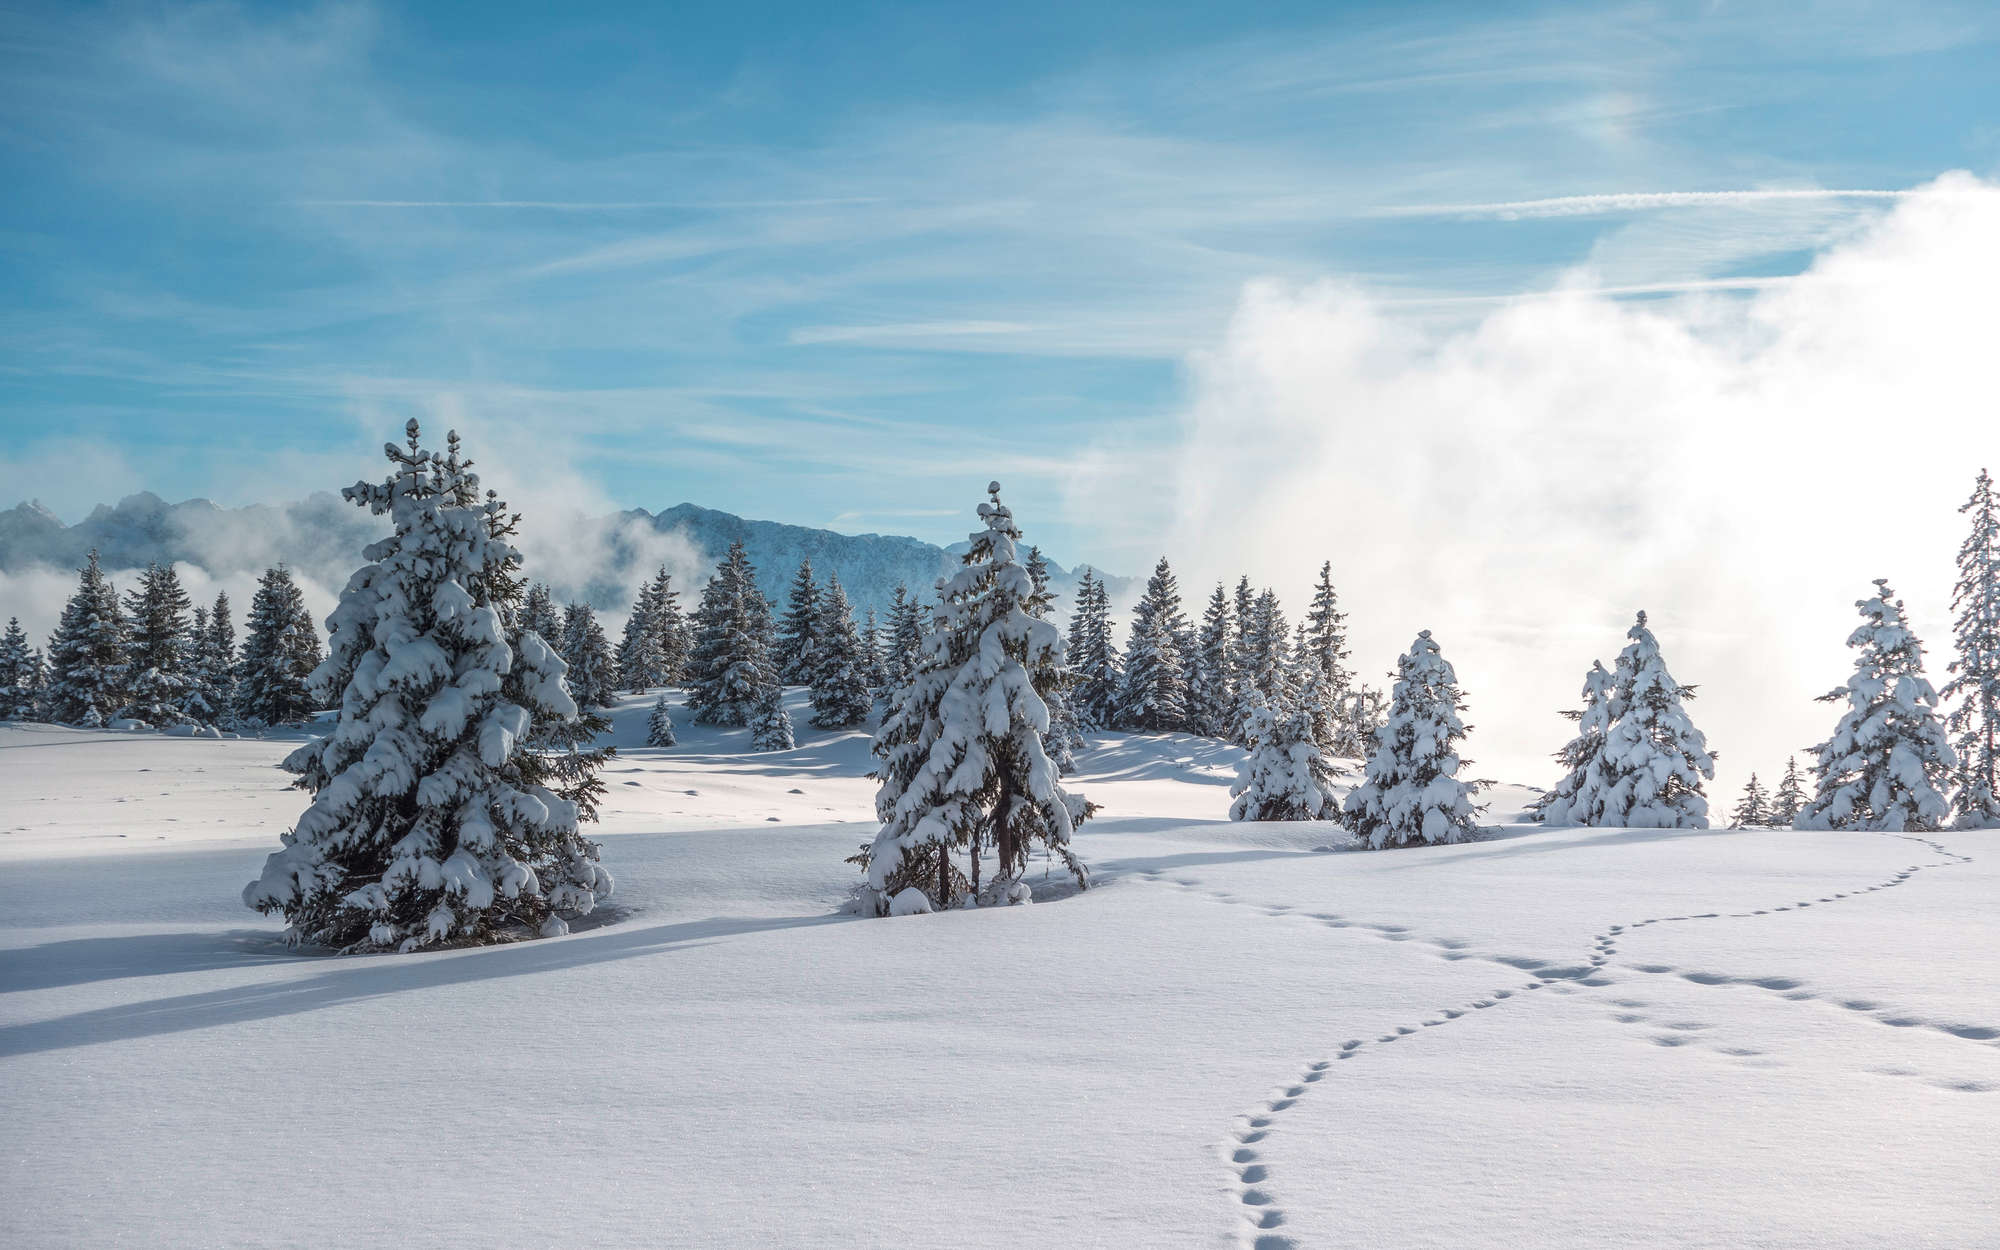             Digital behang Sneeuw en voetafdrukken in winters bos - structuurvlies
        